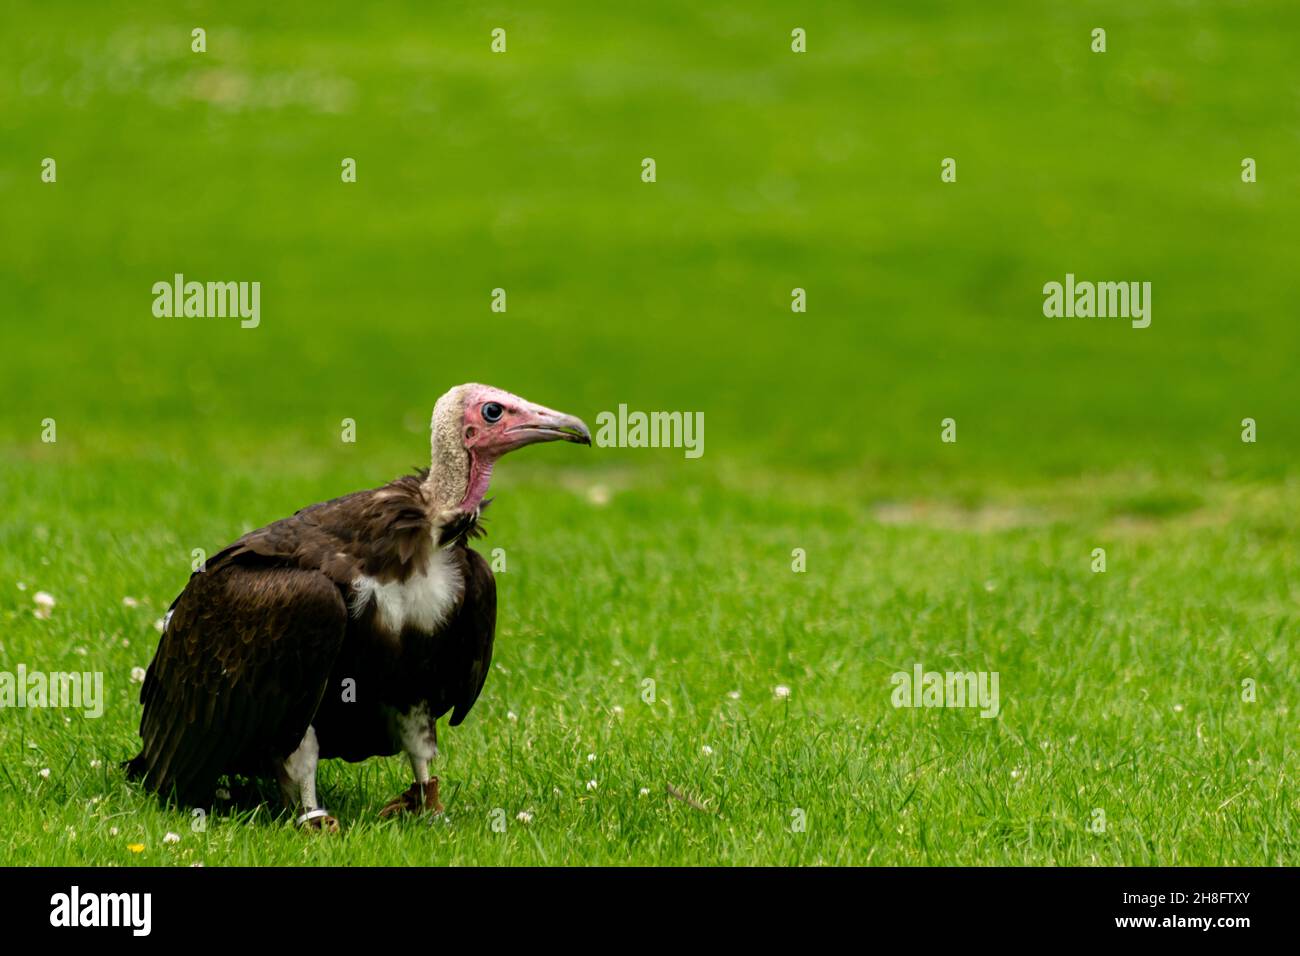 Oiseau vautour à capuchon assis sur une herbe regardant sur le côté, vue de profil d'un oiseau de proie sur le sol, vautour tenu captif et formé à obéir Banque D'Images